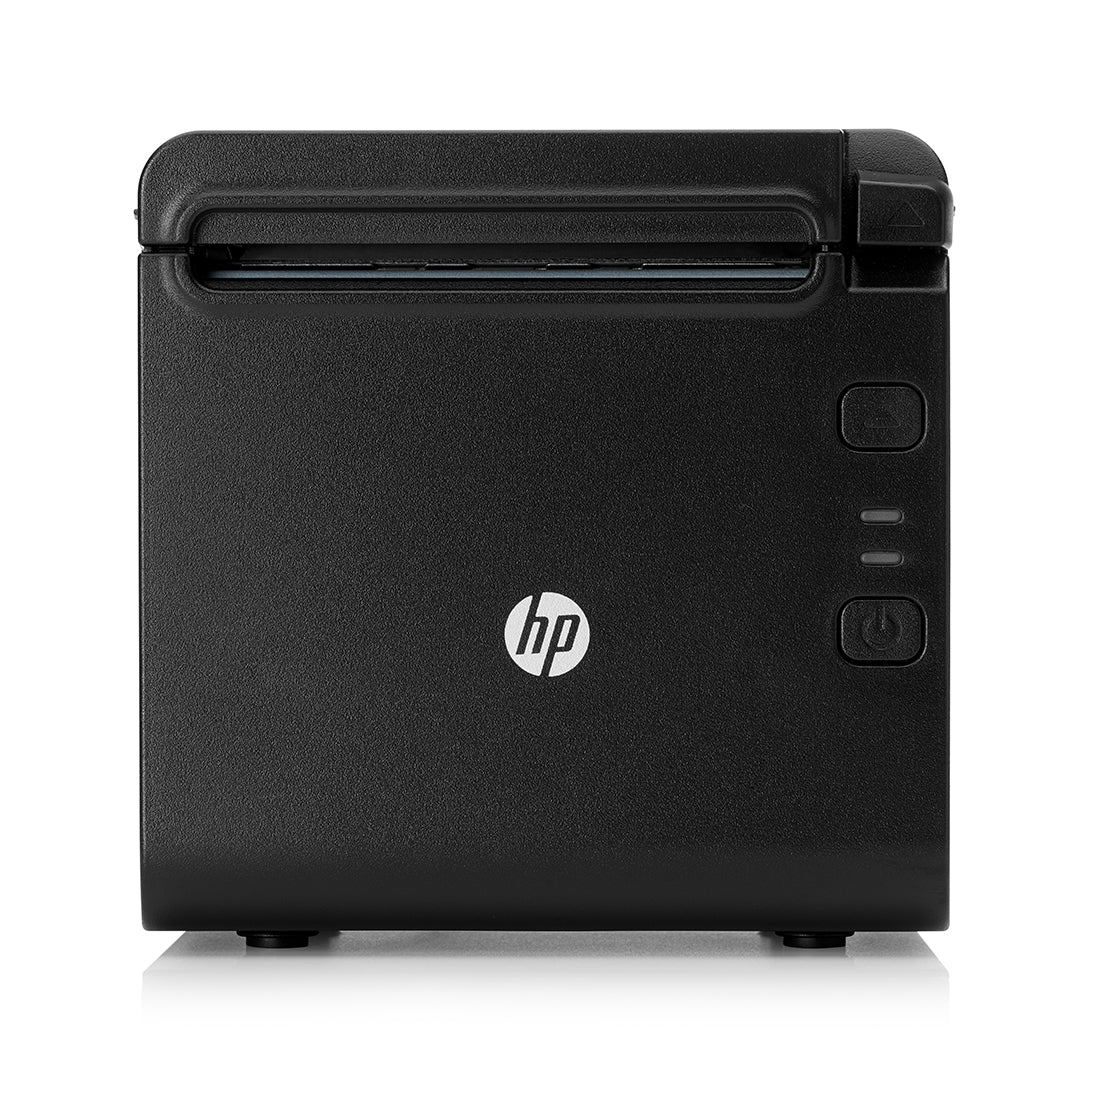 HP वैल्यू थर्मल रसीद प्रिंटर (4AK33AA)